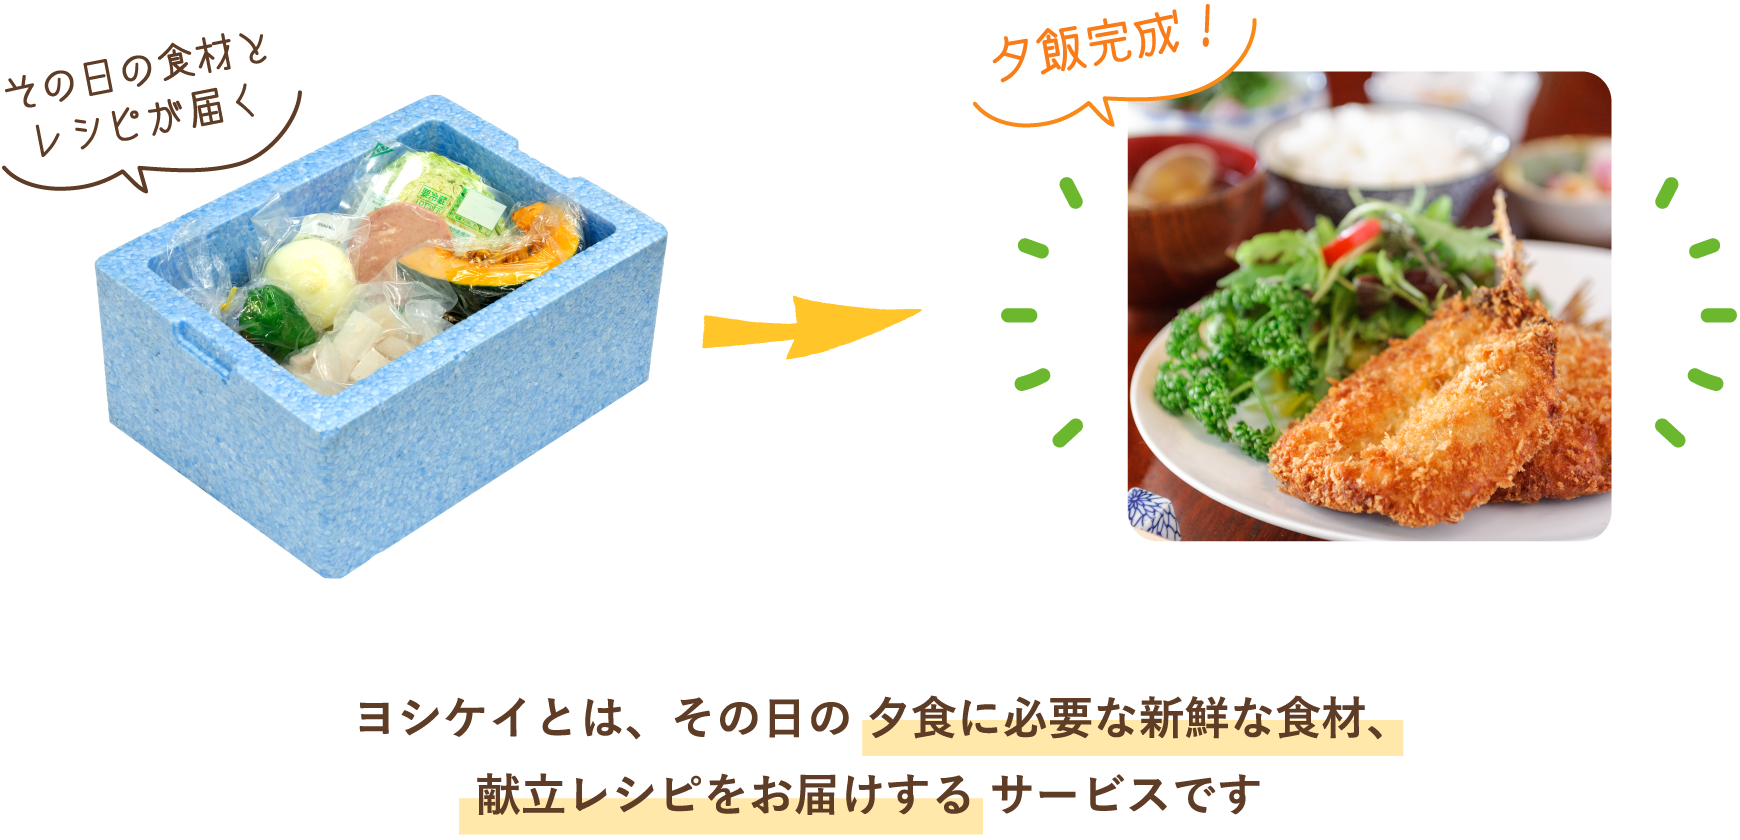 ヨシケイとは、その日の 夕食に必要な新鮮な食材、献立レシピをお届けするサービスです